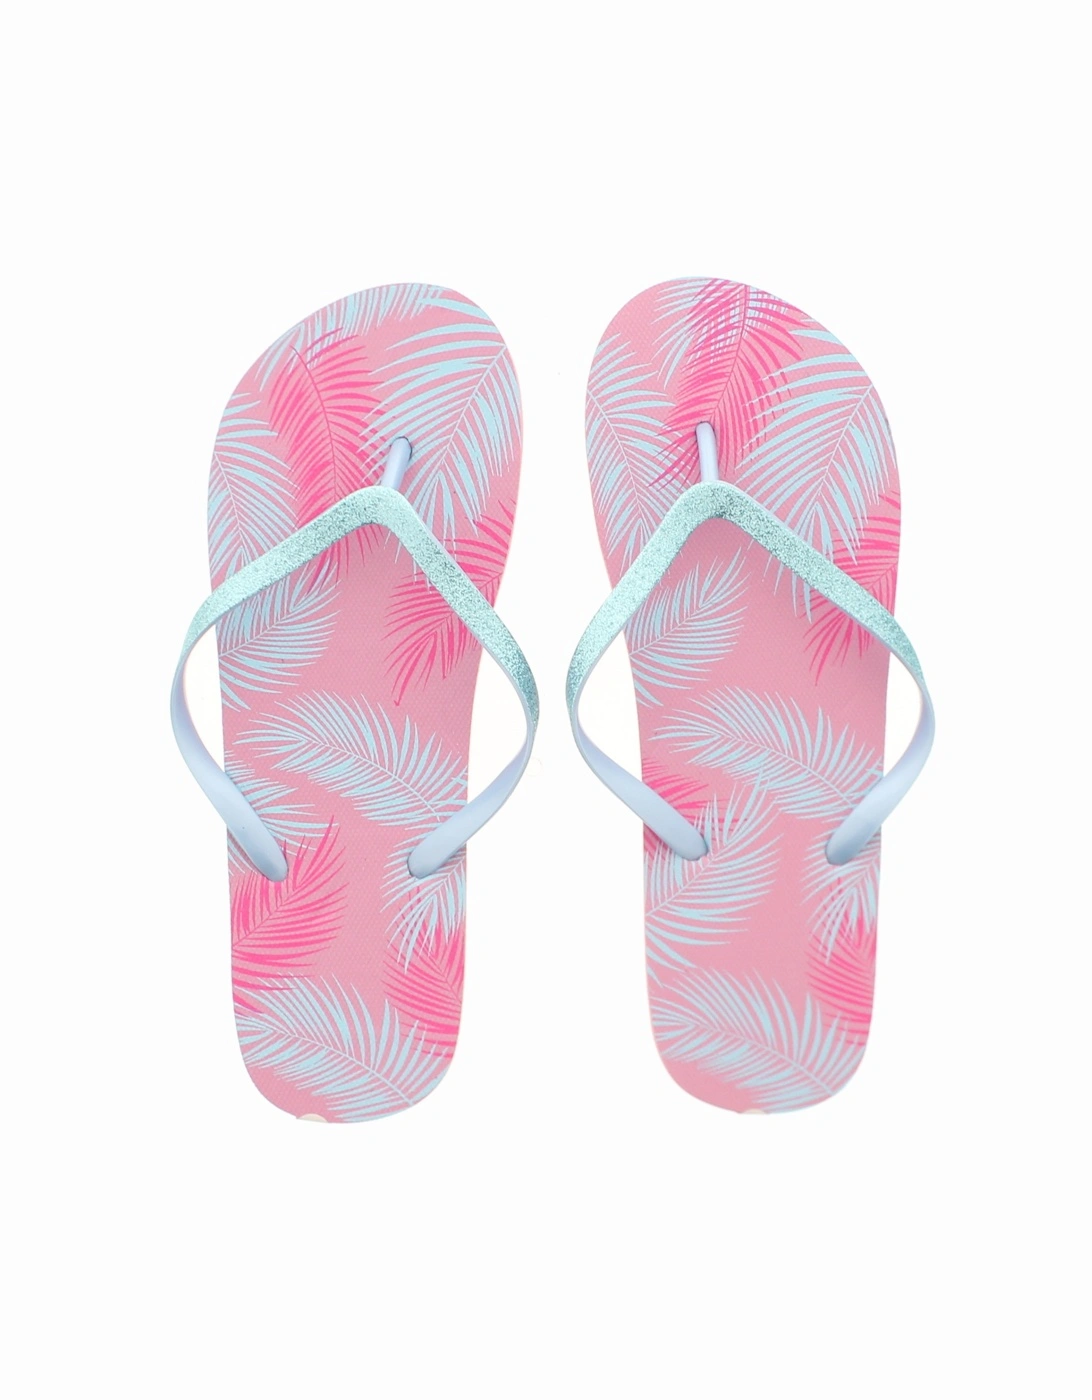 Ladies Sandals Palm Tree Leaf Flip Flop Sliders Beach Pool Pink UK Size, 2 of 1